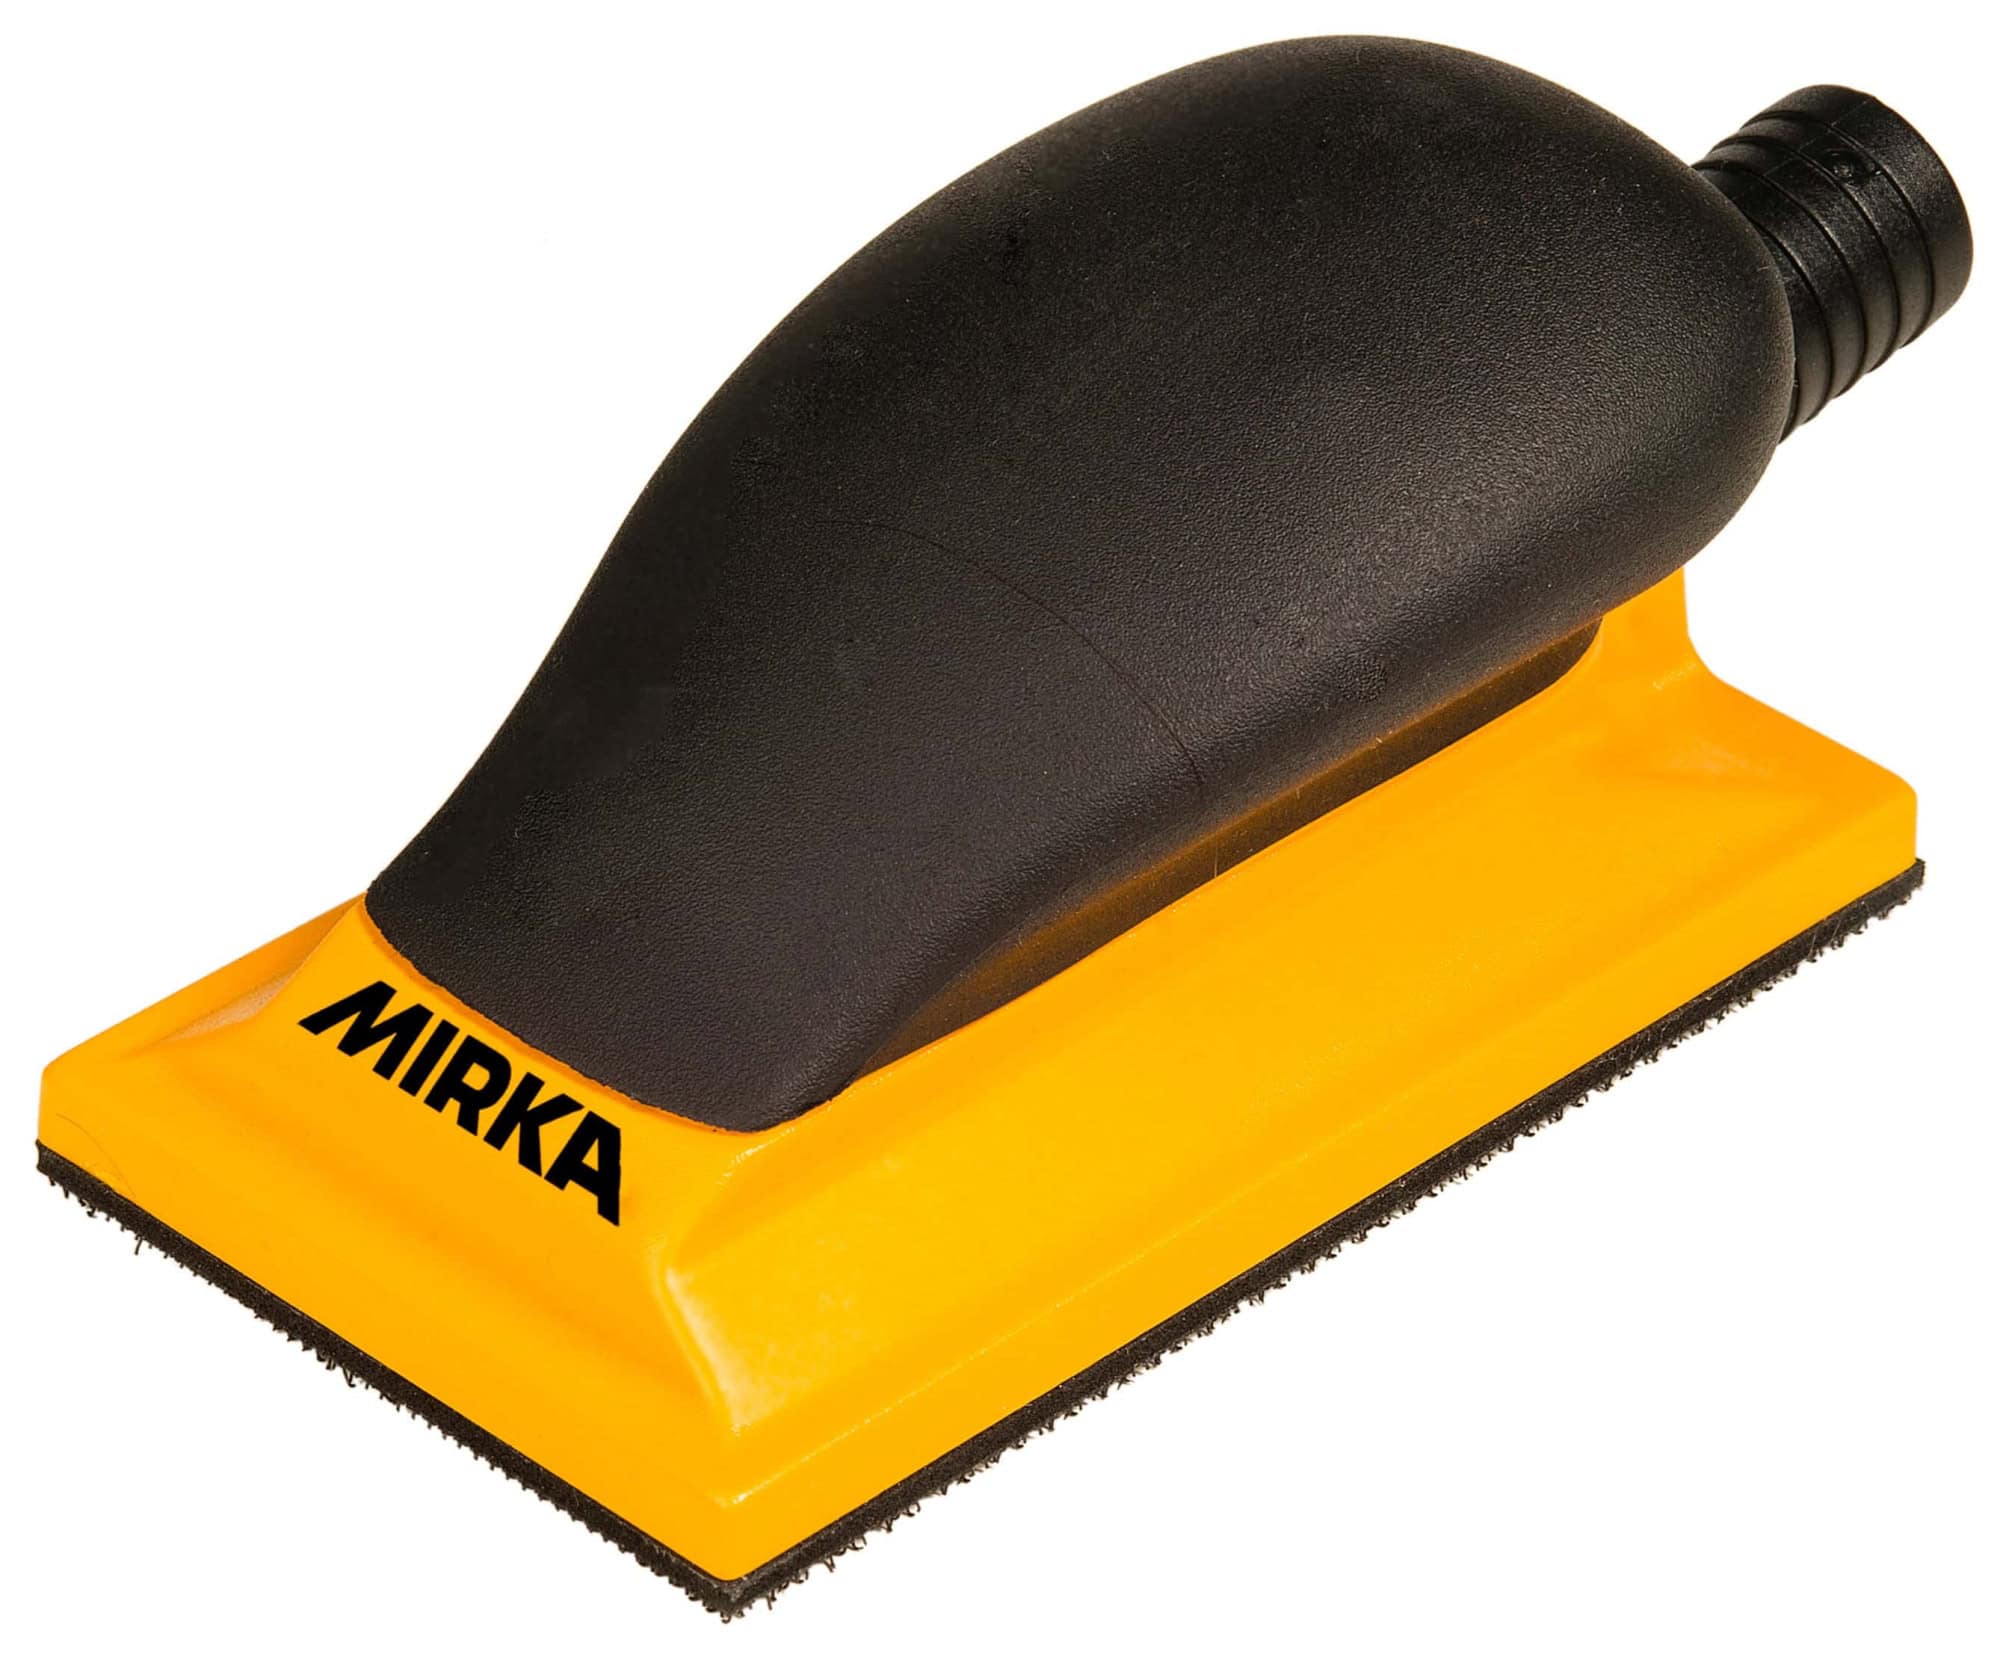 Mirka® 8391400111, 70 x 125 mm, Medium, 13 Löcher, Gelb, Kletthaftend, Handblock mit Absaugung aus Kunststoff